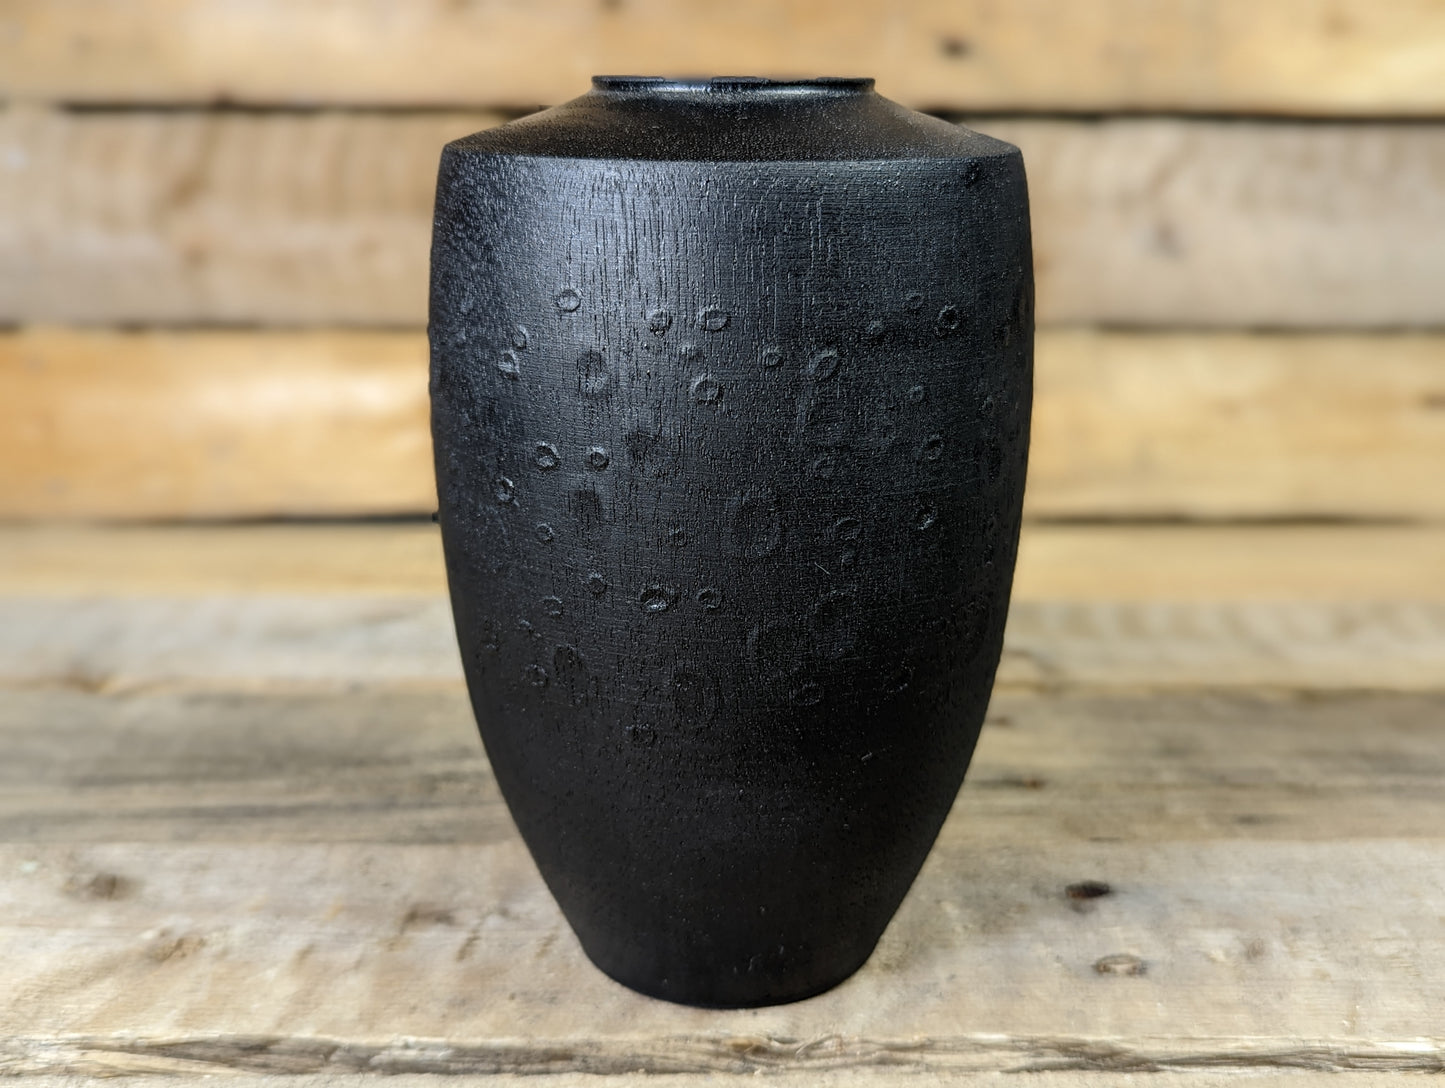 Textured dry vase